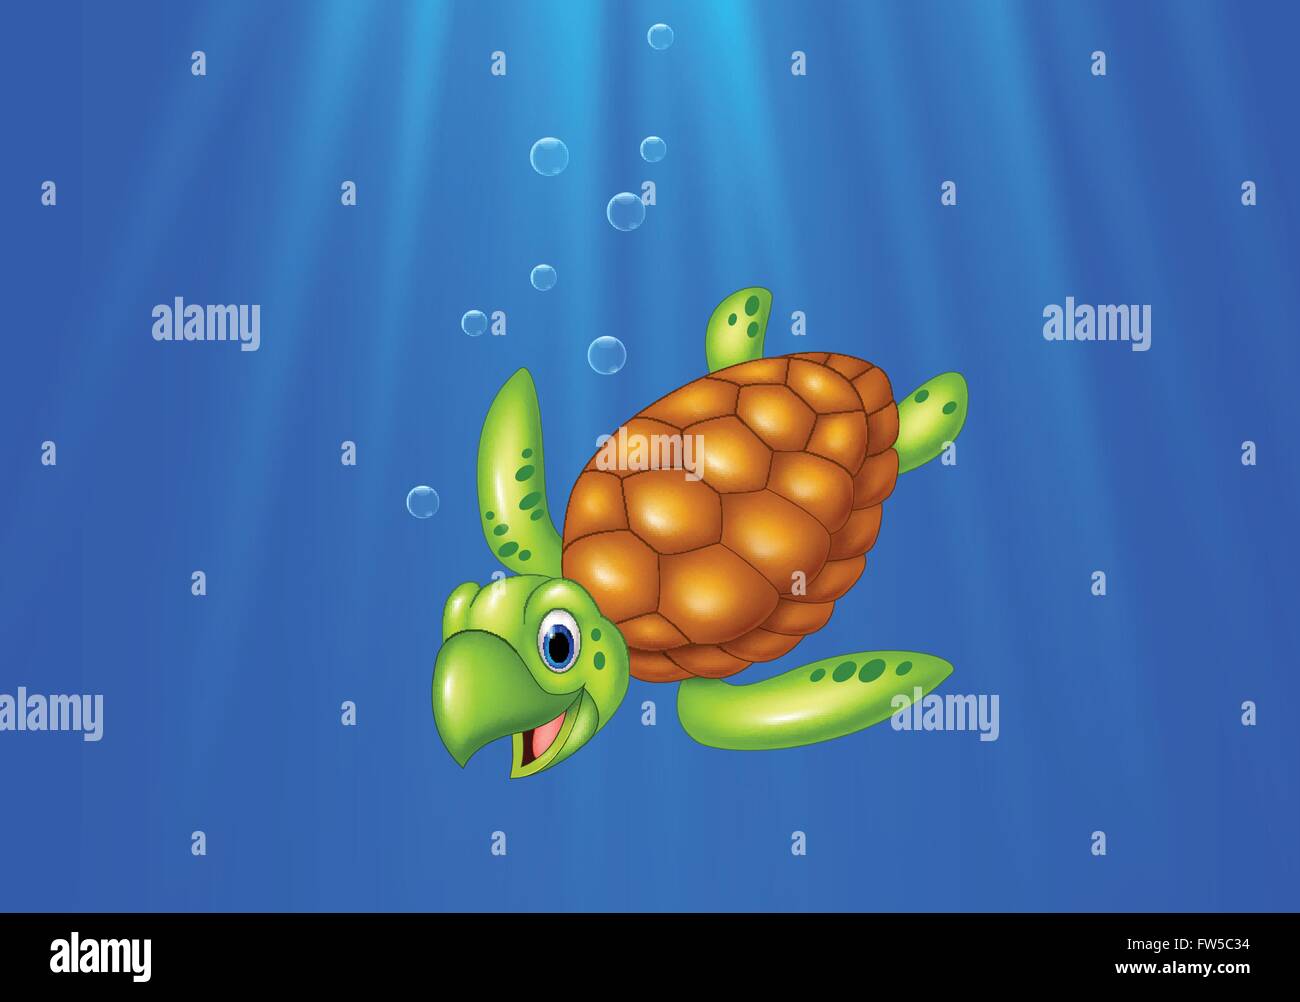 Cartoon tortue de mer nager dans l'océan Illustration de Vecteur